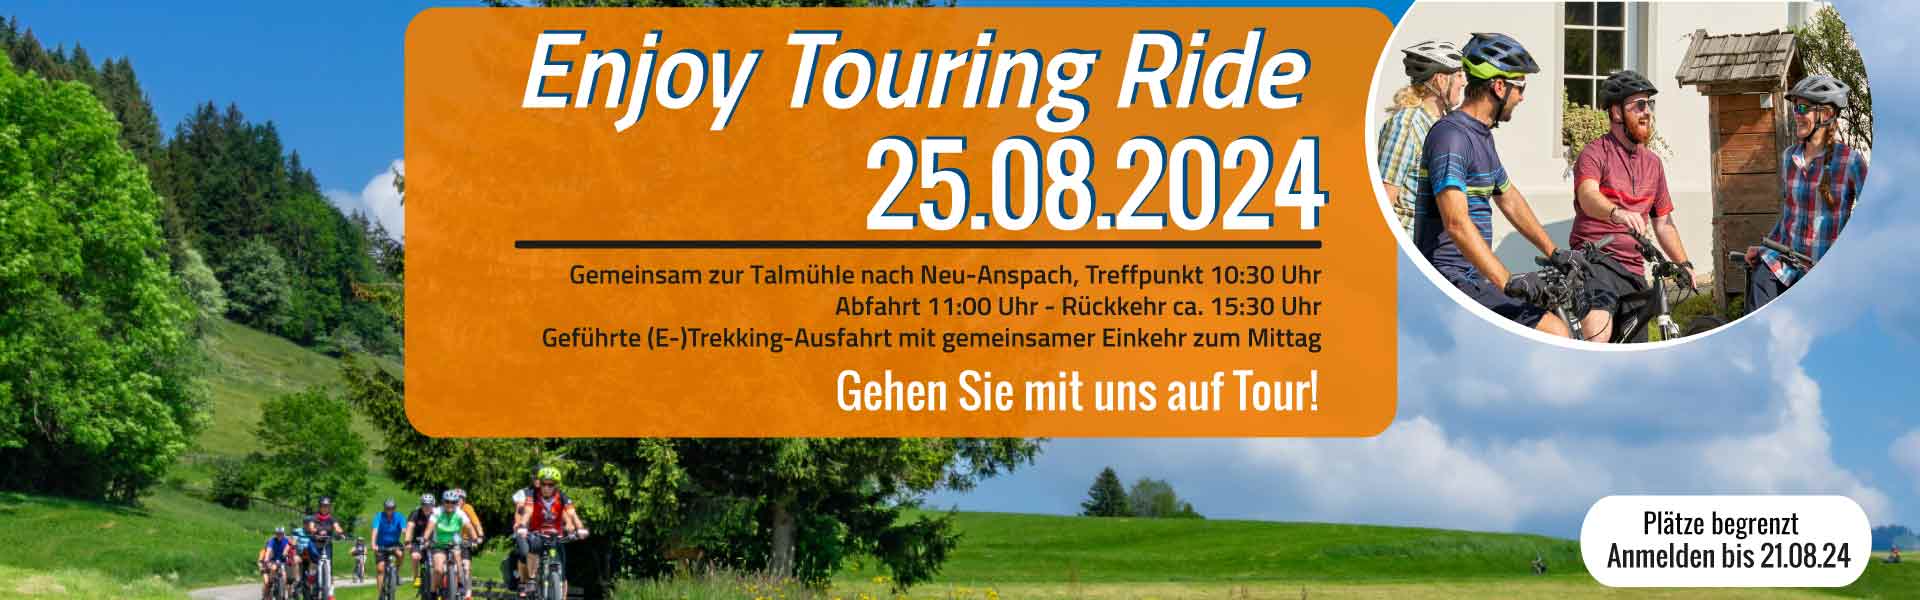 DENFELD Enjoy Touring Ride 25.08.24 - Gemeinsame E-Trekking-Ausfahrt